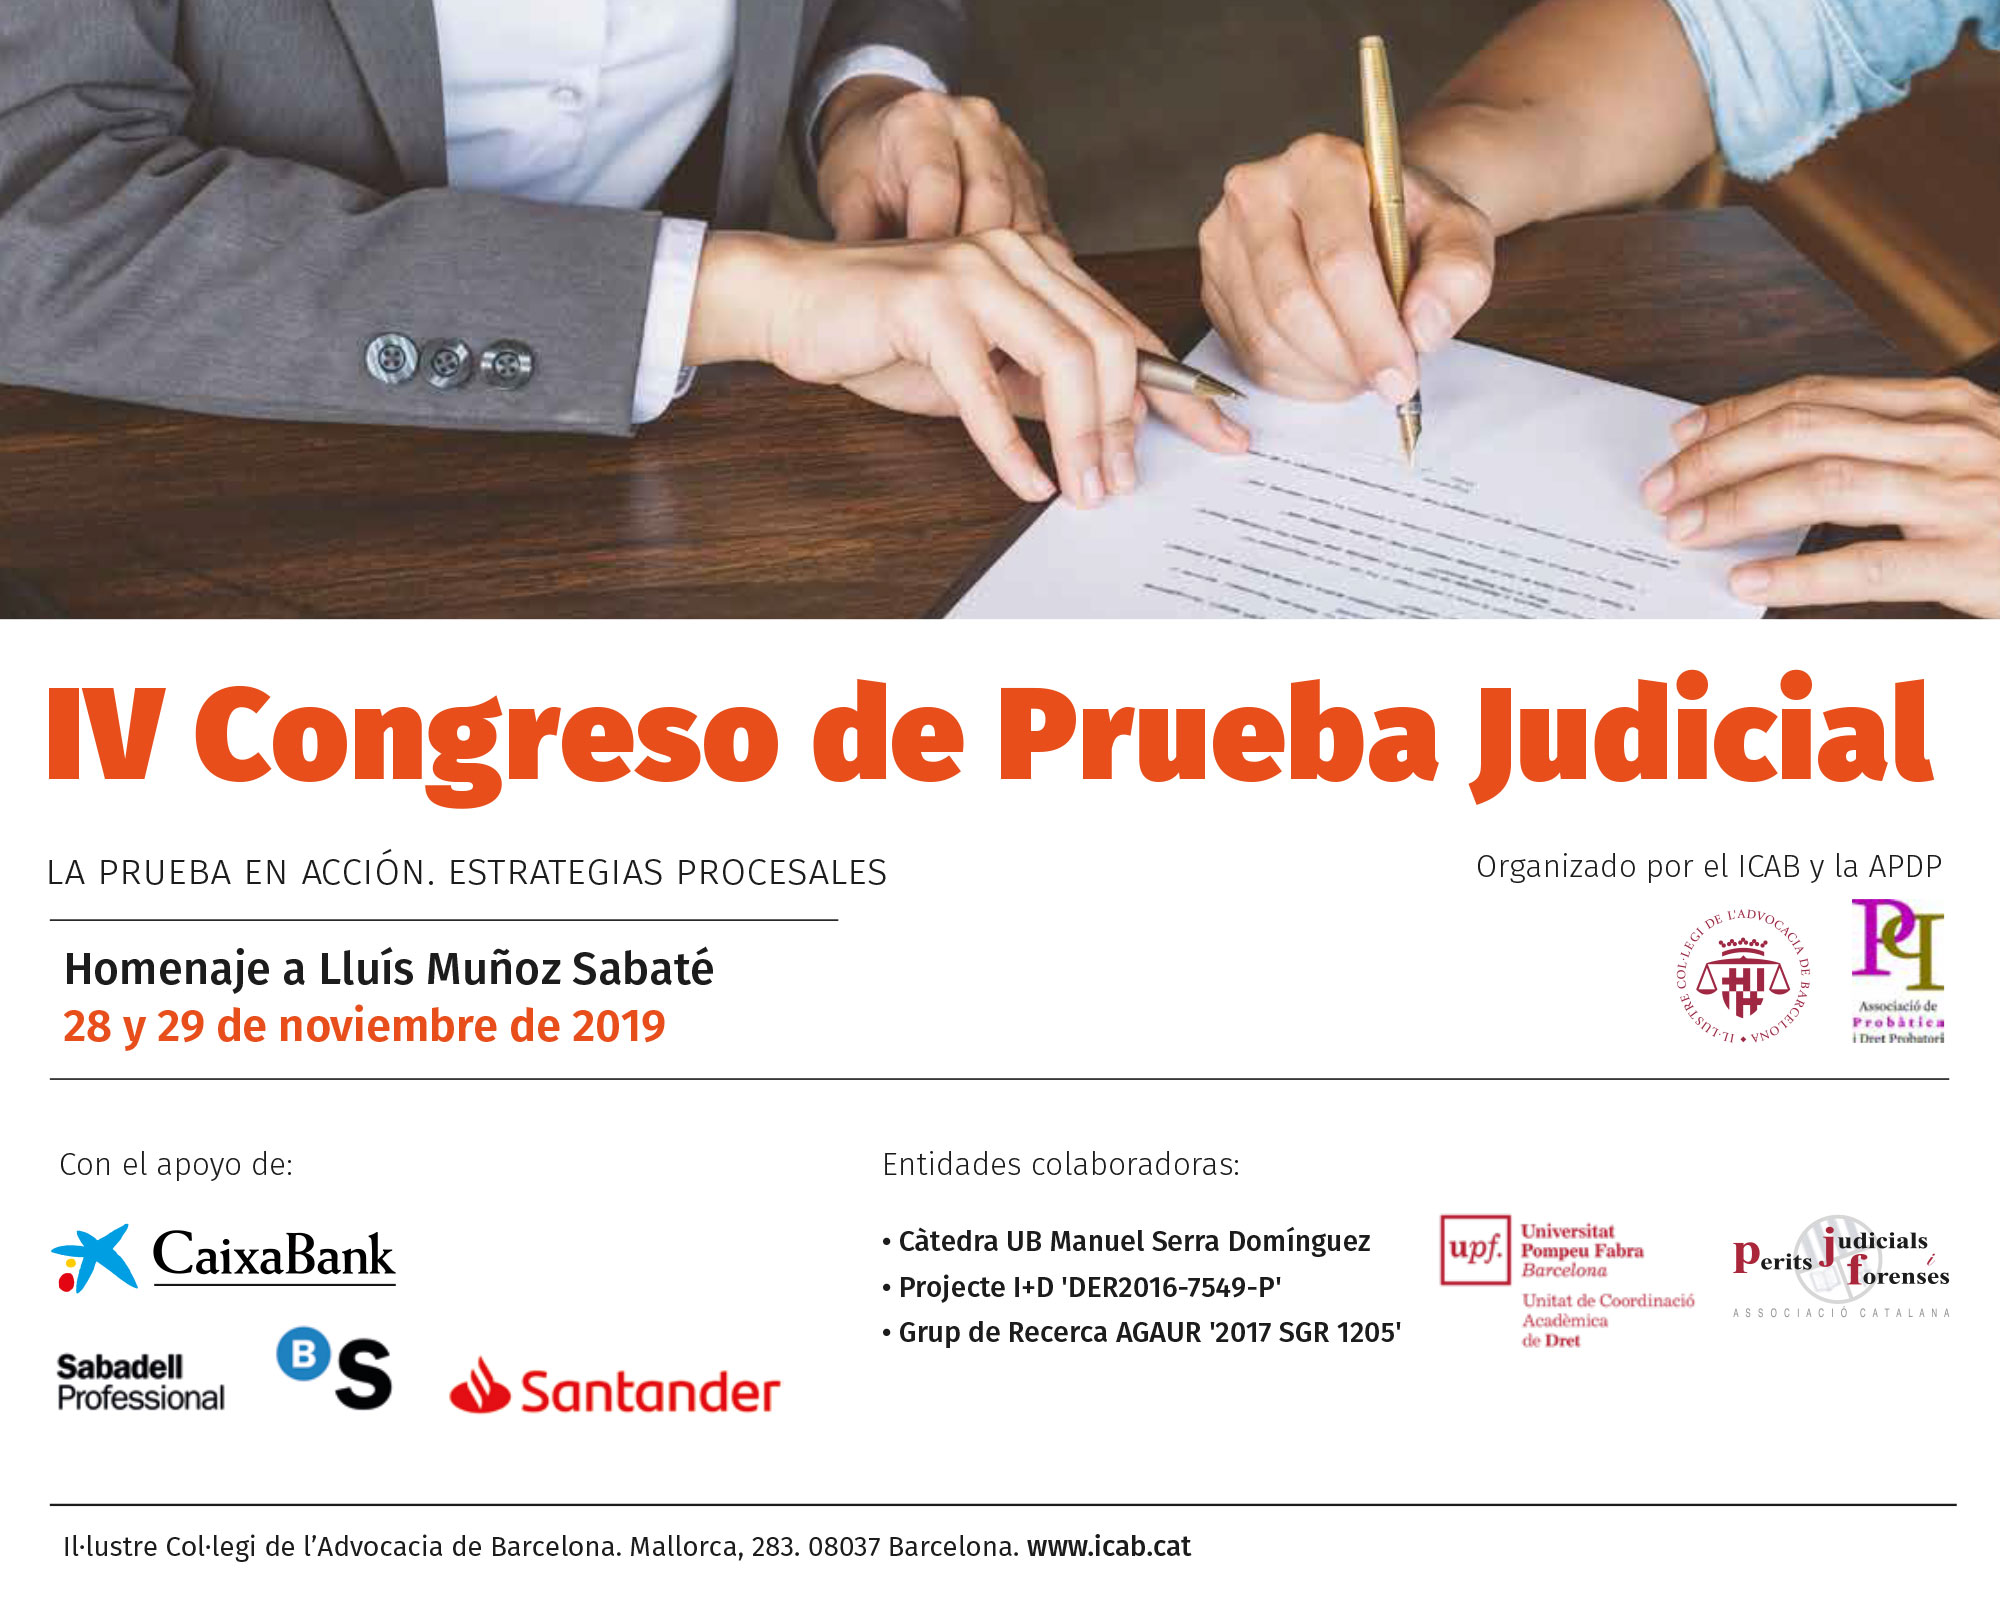 IV Congreso de Prueba Judicial (2019): La prueba en acción. Estrategias procesales